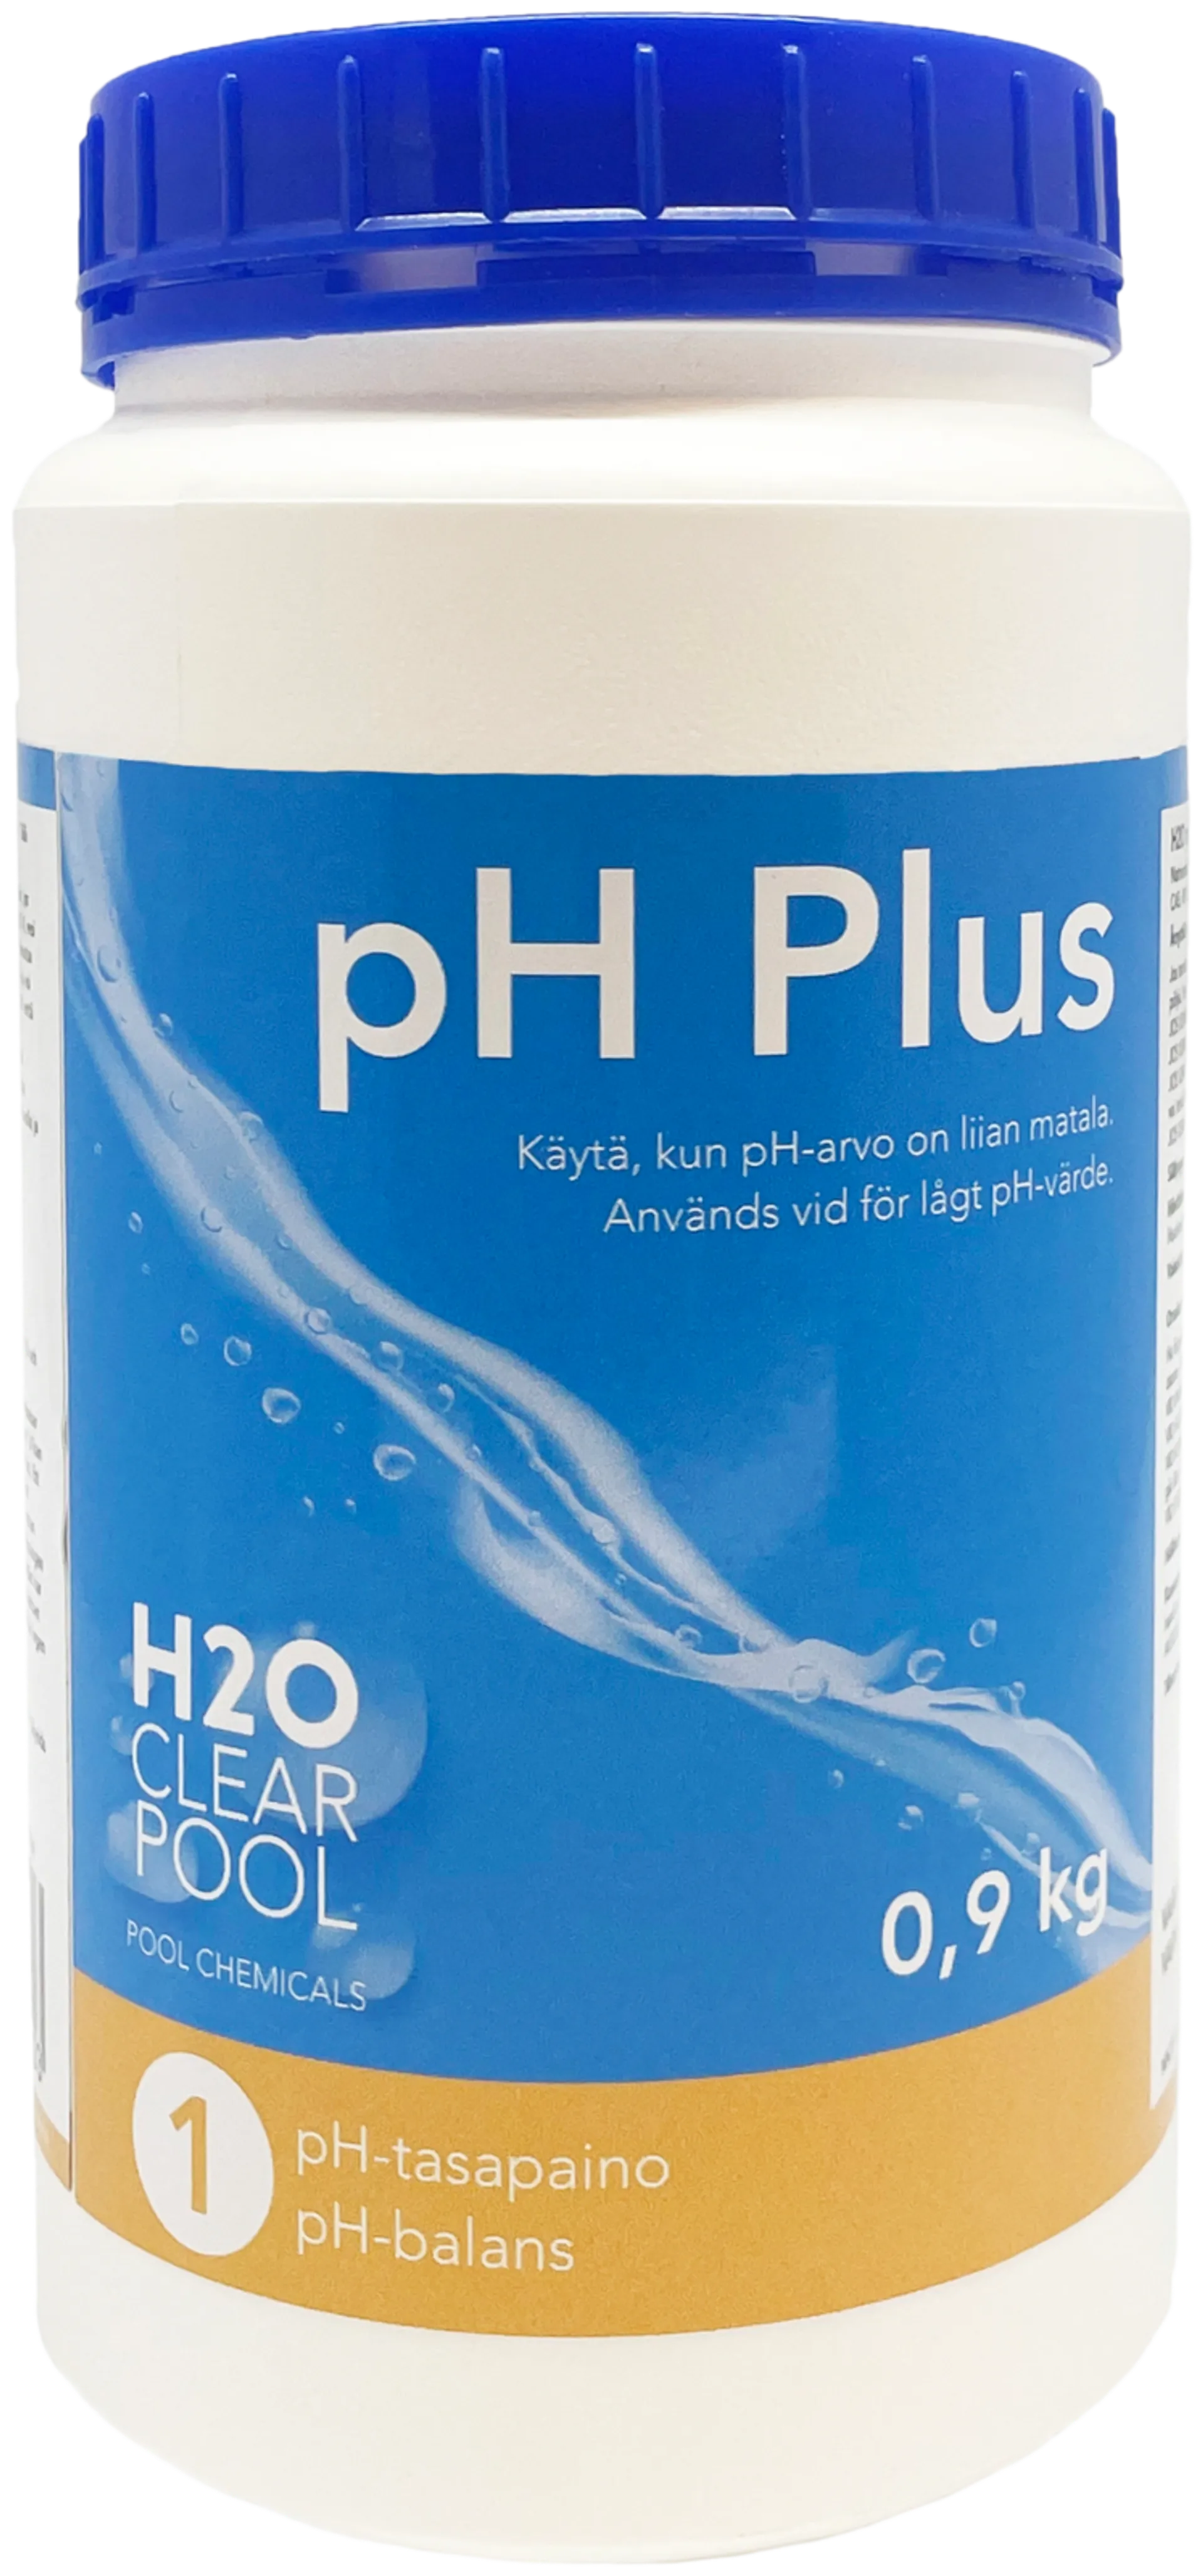 H2O Ph Plus 0,9 Kg